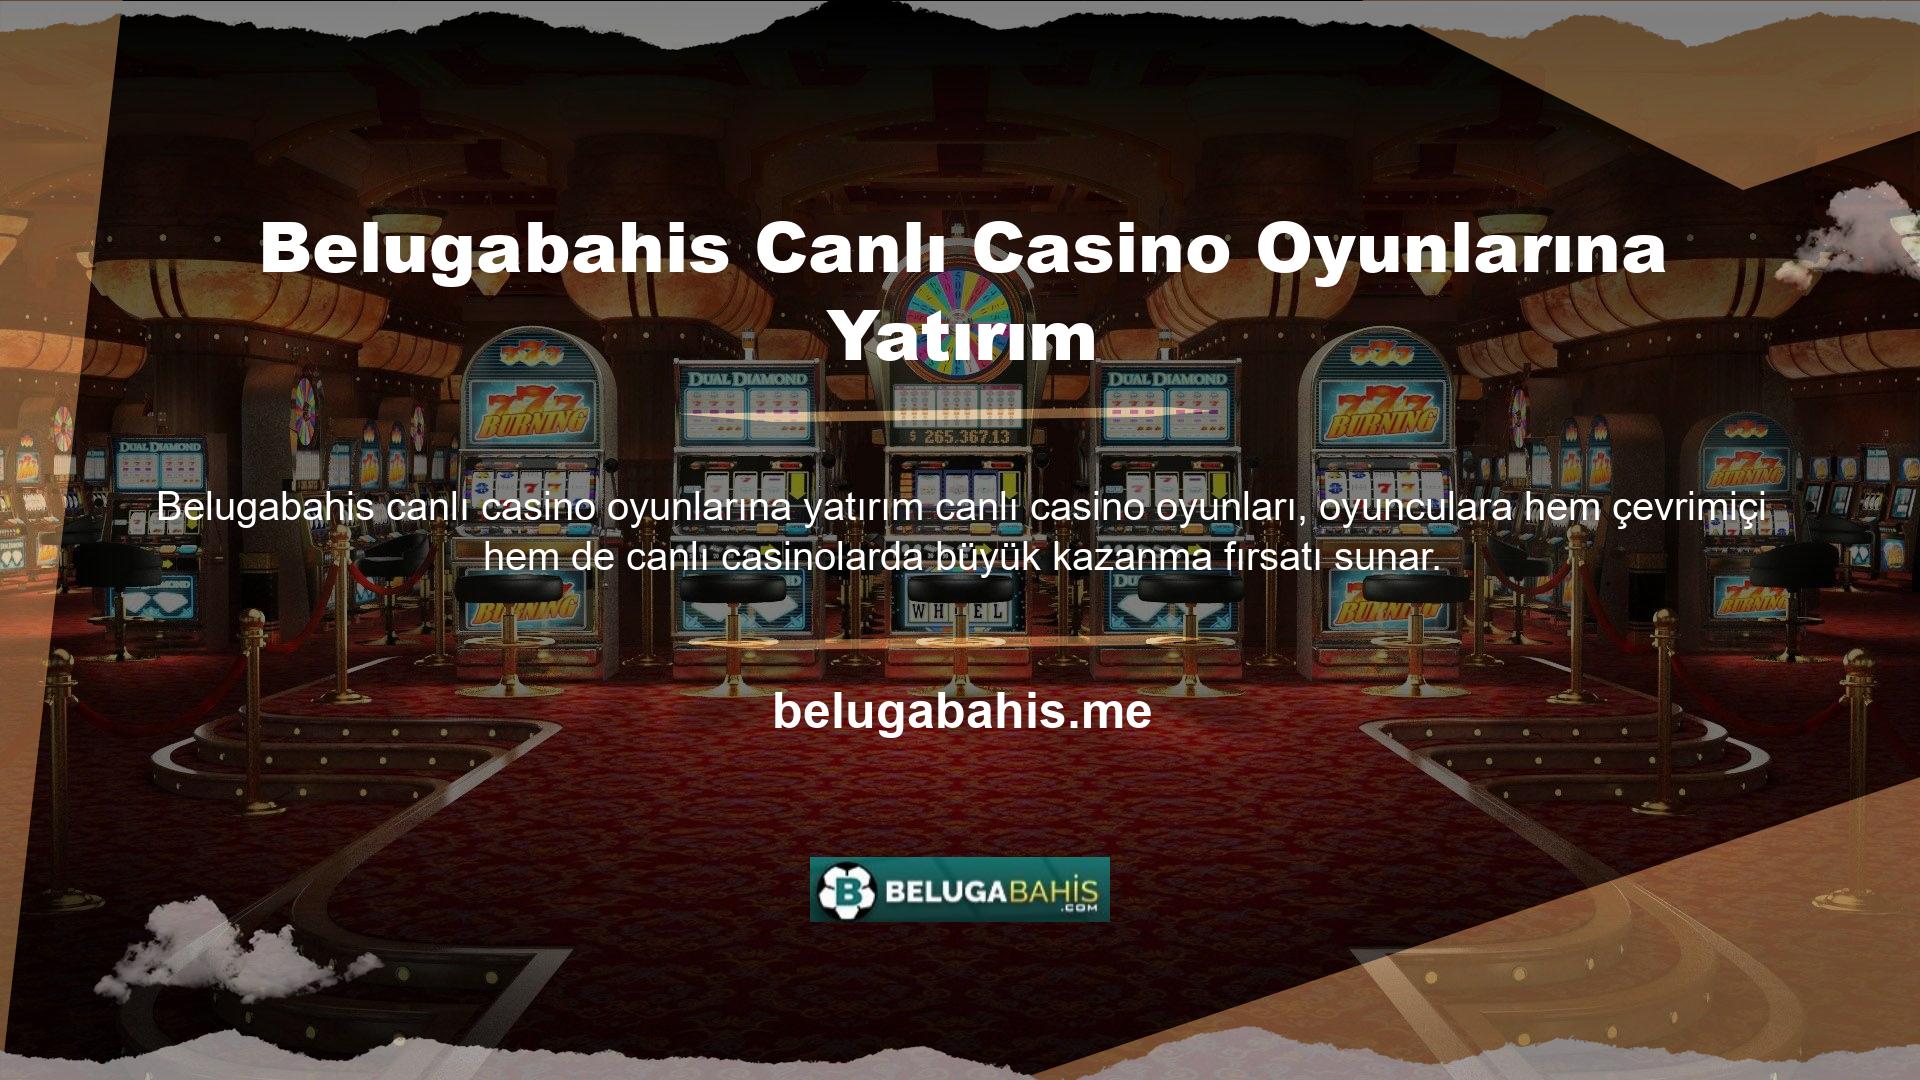 Canlı casino oyunları oynayan Belugabahis üyeleri, her oyun için belirlenen yüksek bahis oranlarından yararlanır